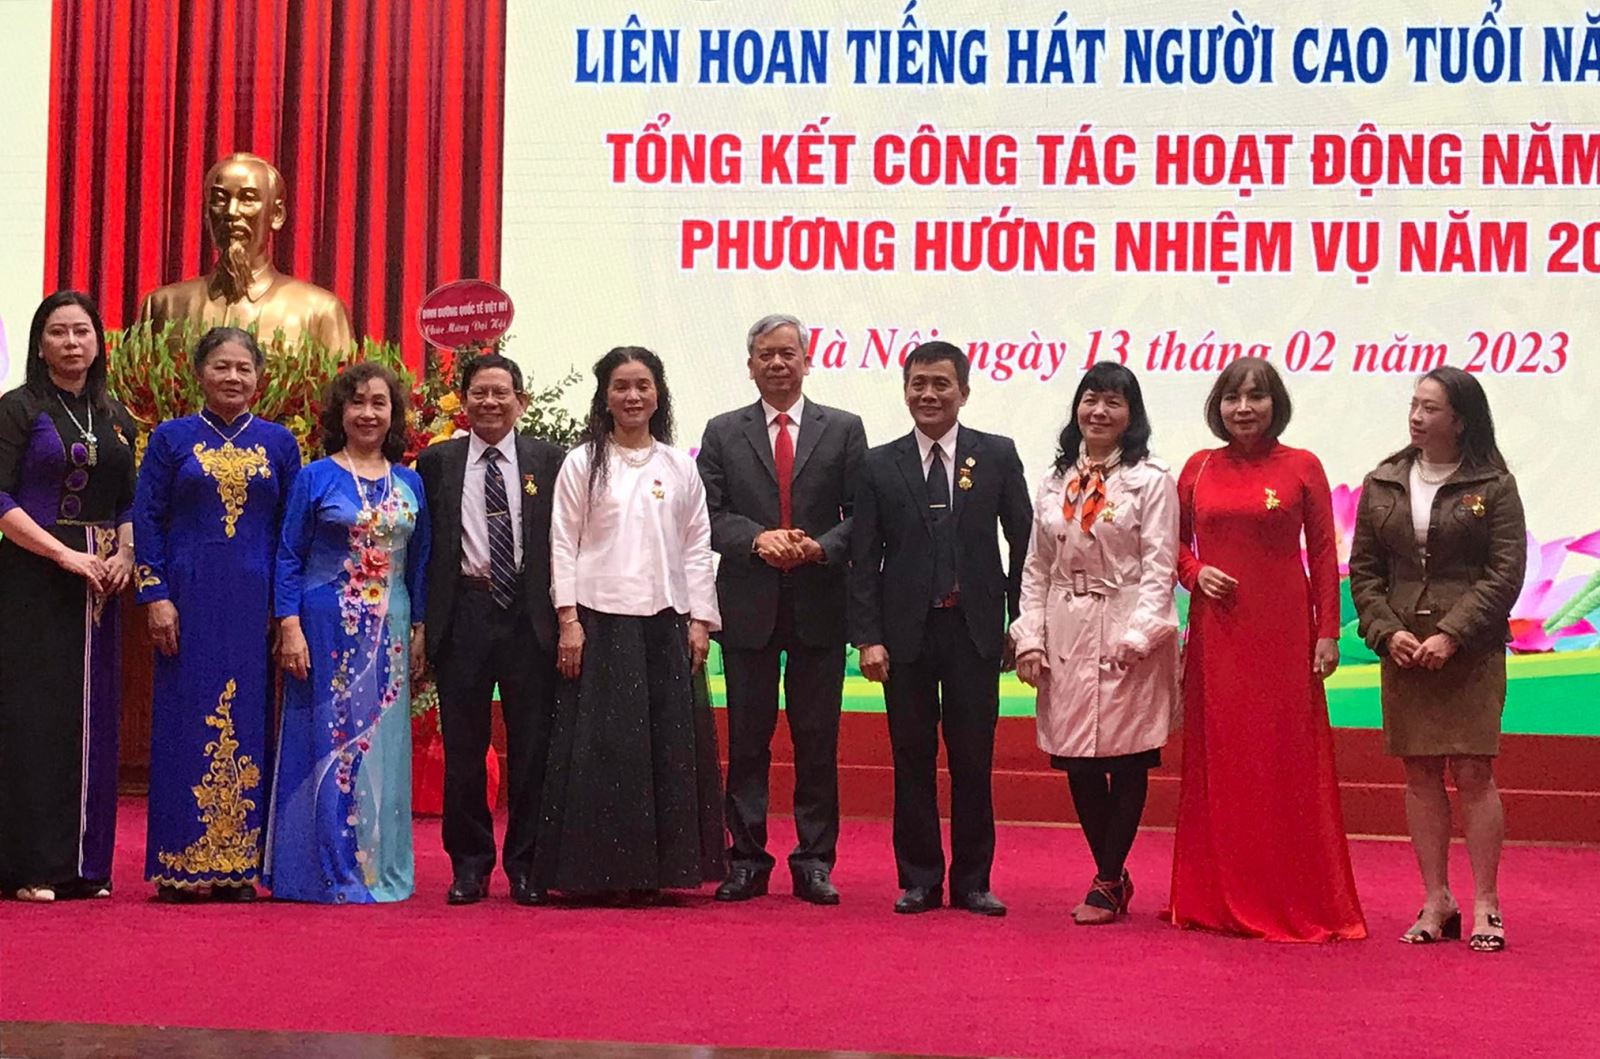 Trung tâm Văn hóa Người cao tuổi Việt Nam tổng kết hoạt động năm 2022